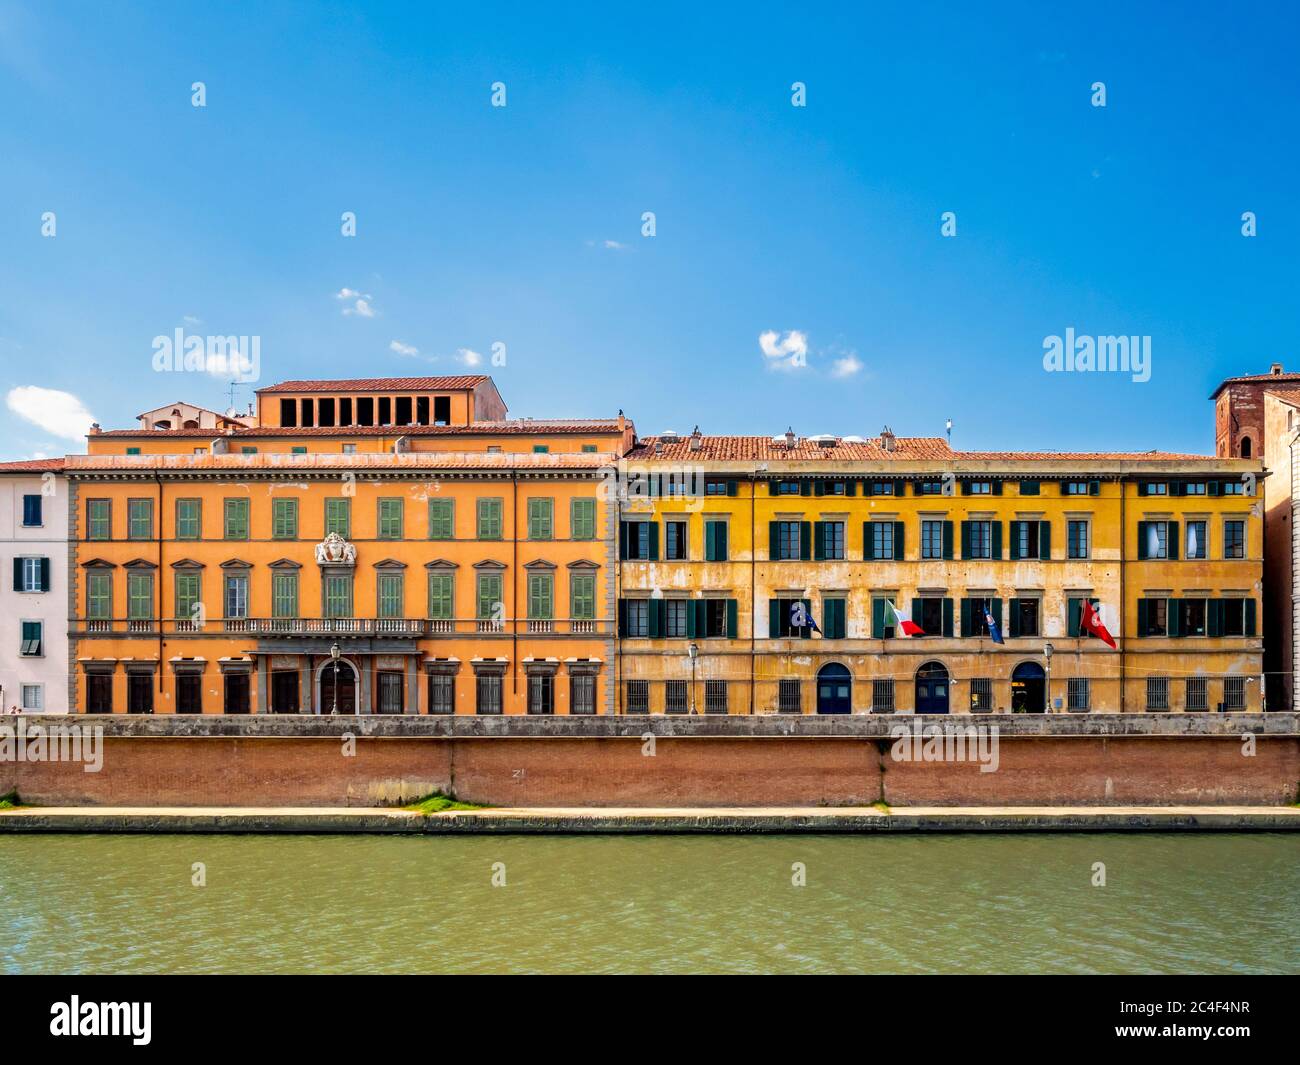 Bâtiment de l'université, Palazzo Vitelli avec la rivière Arno au premier plan. Pise. Italie. Banque D'Images